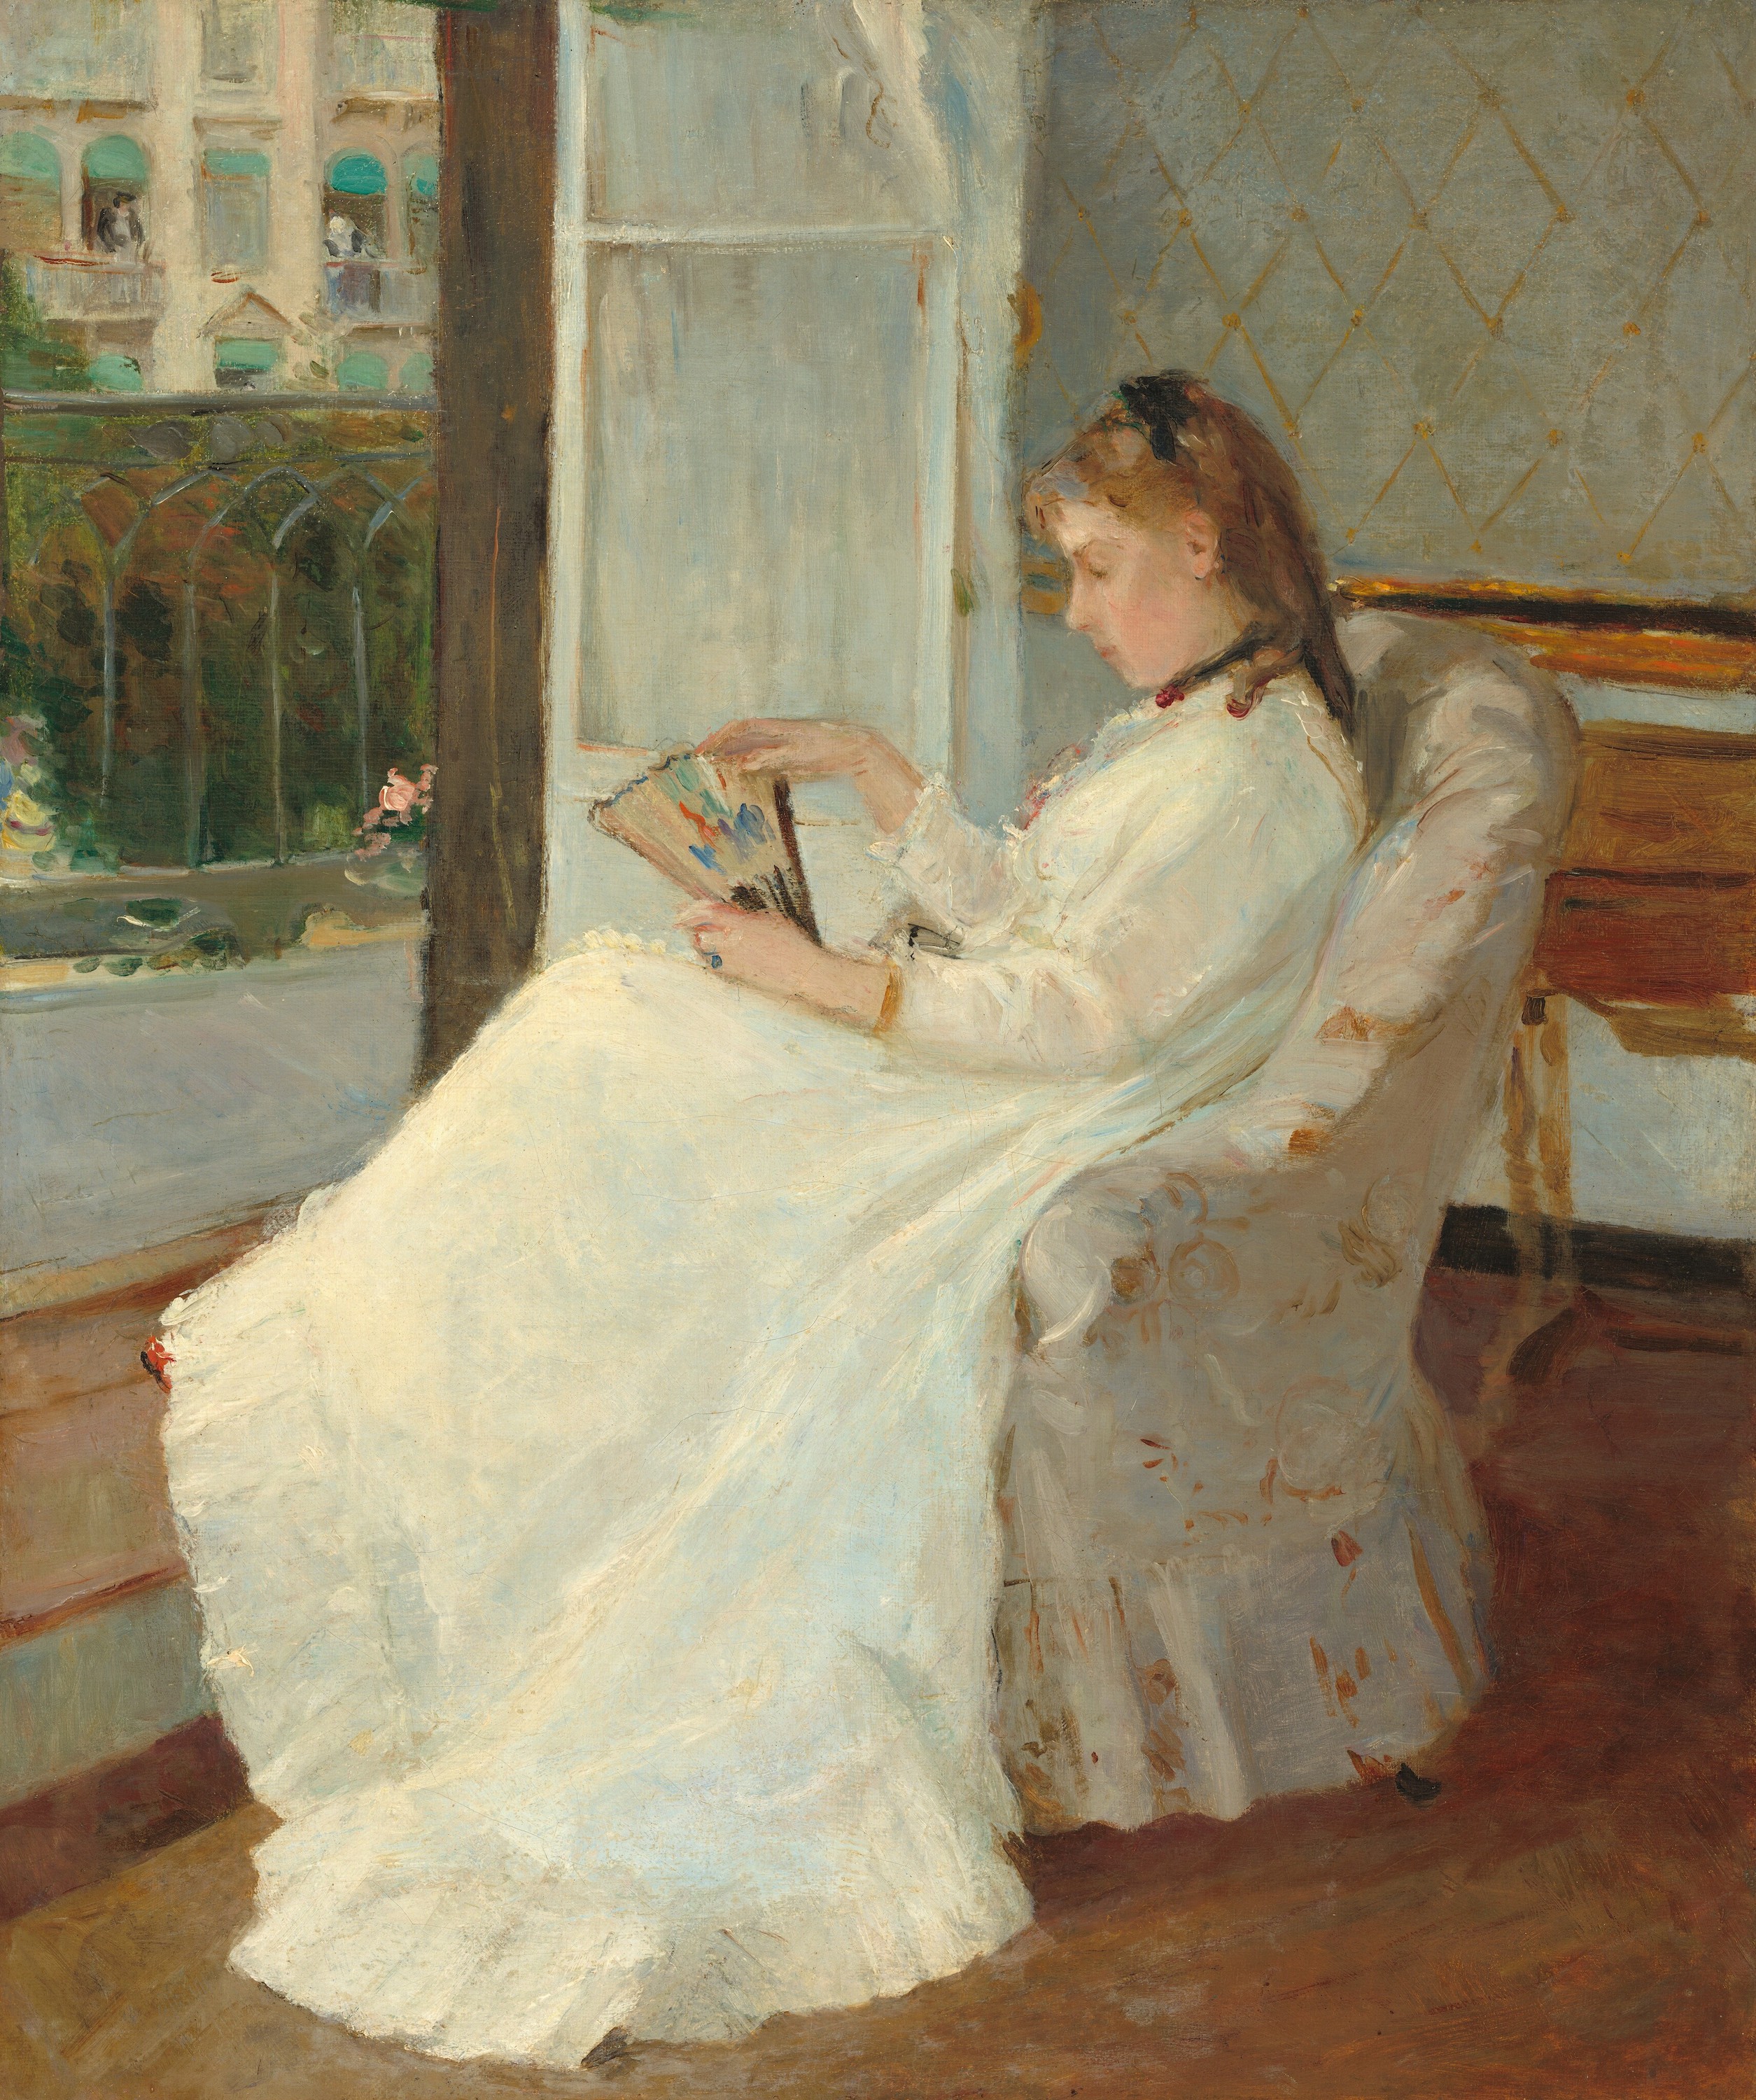 A művész nővére egy ablaknál by Berthe Morisot - 1869 - 54,8 x 46,3 cm 